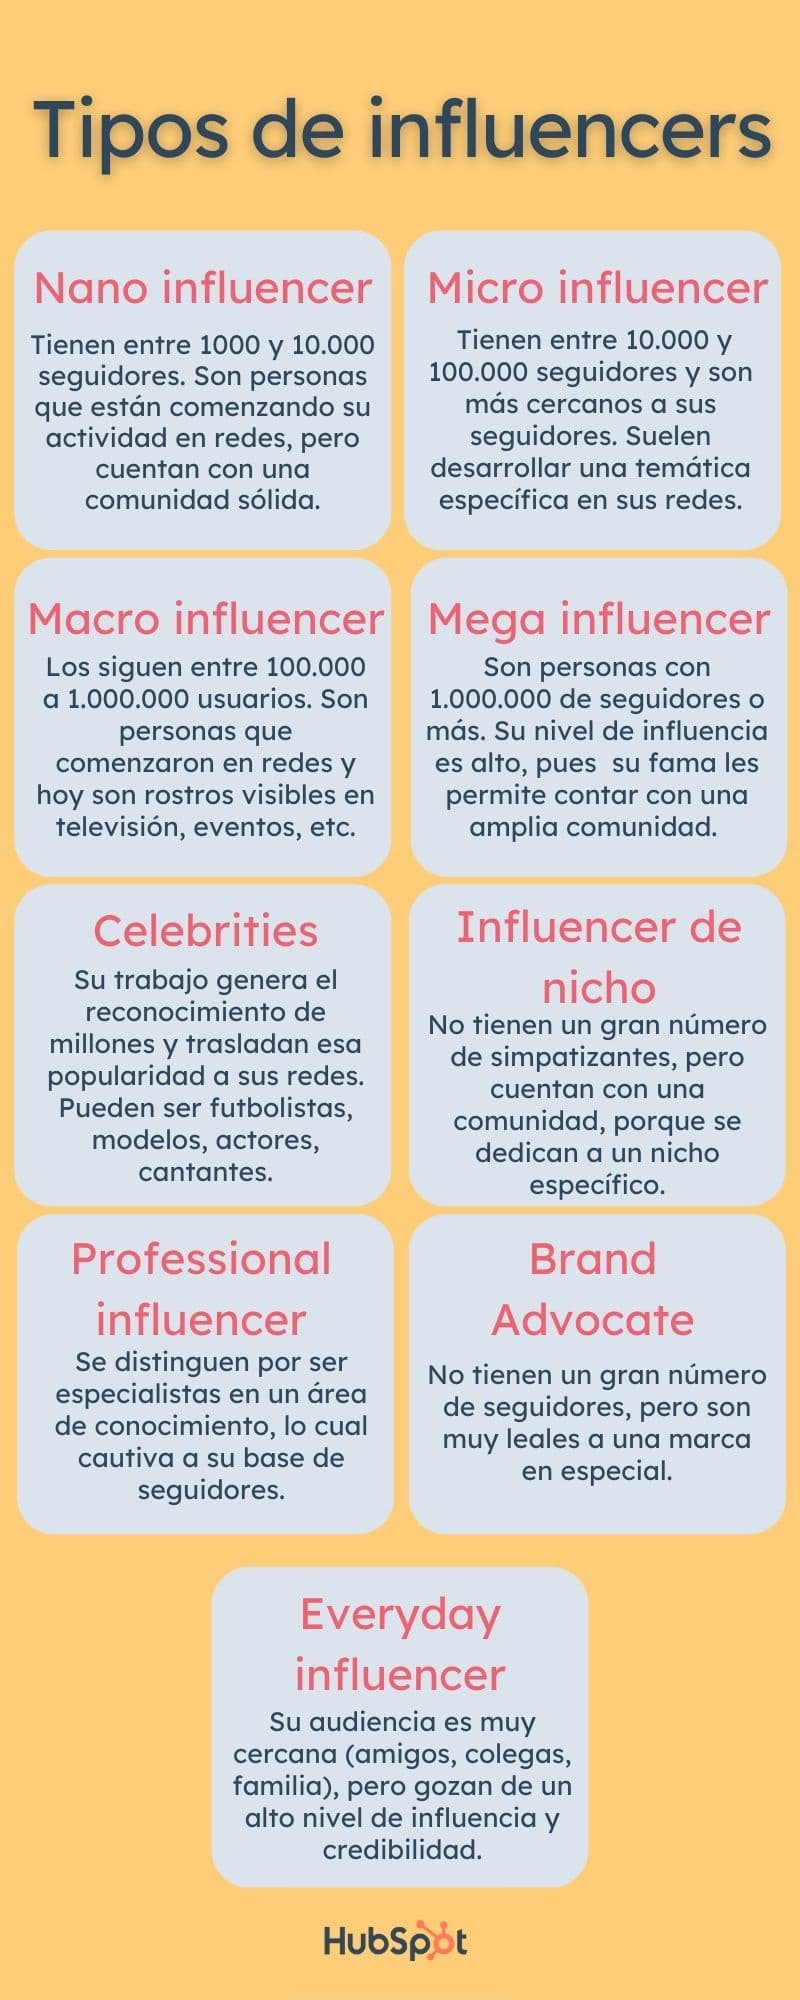 Infografía sobre los tipos de influencers